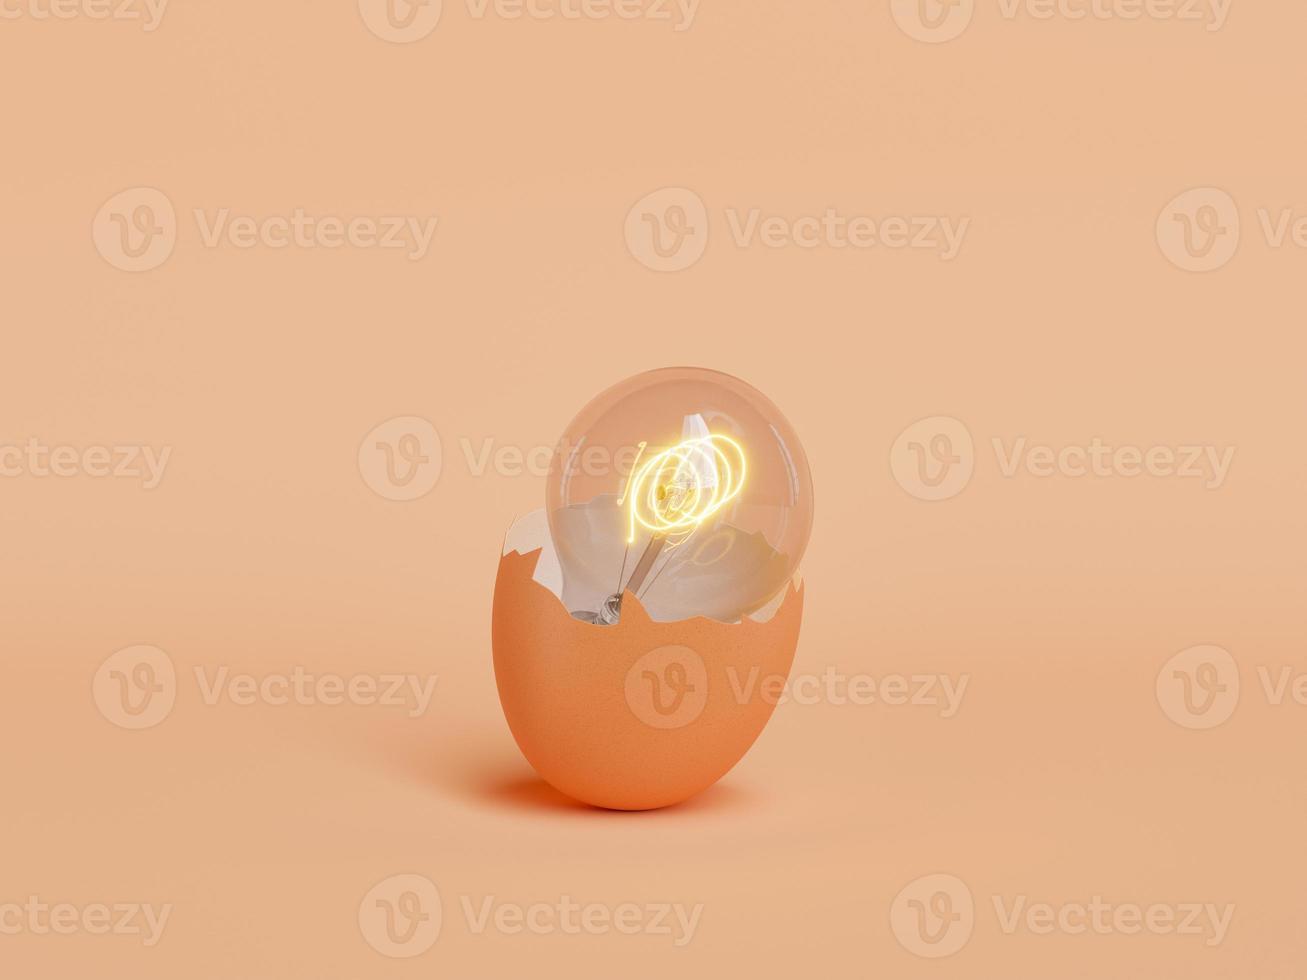 lampadina illuminata all'interno di un guscio d'uovo rotto foto